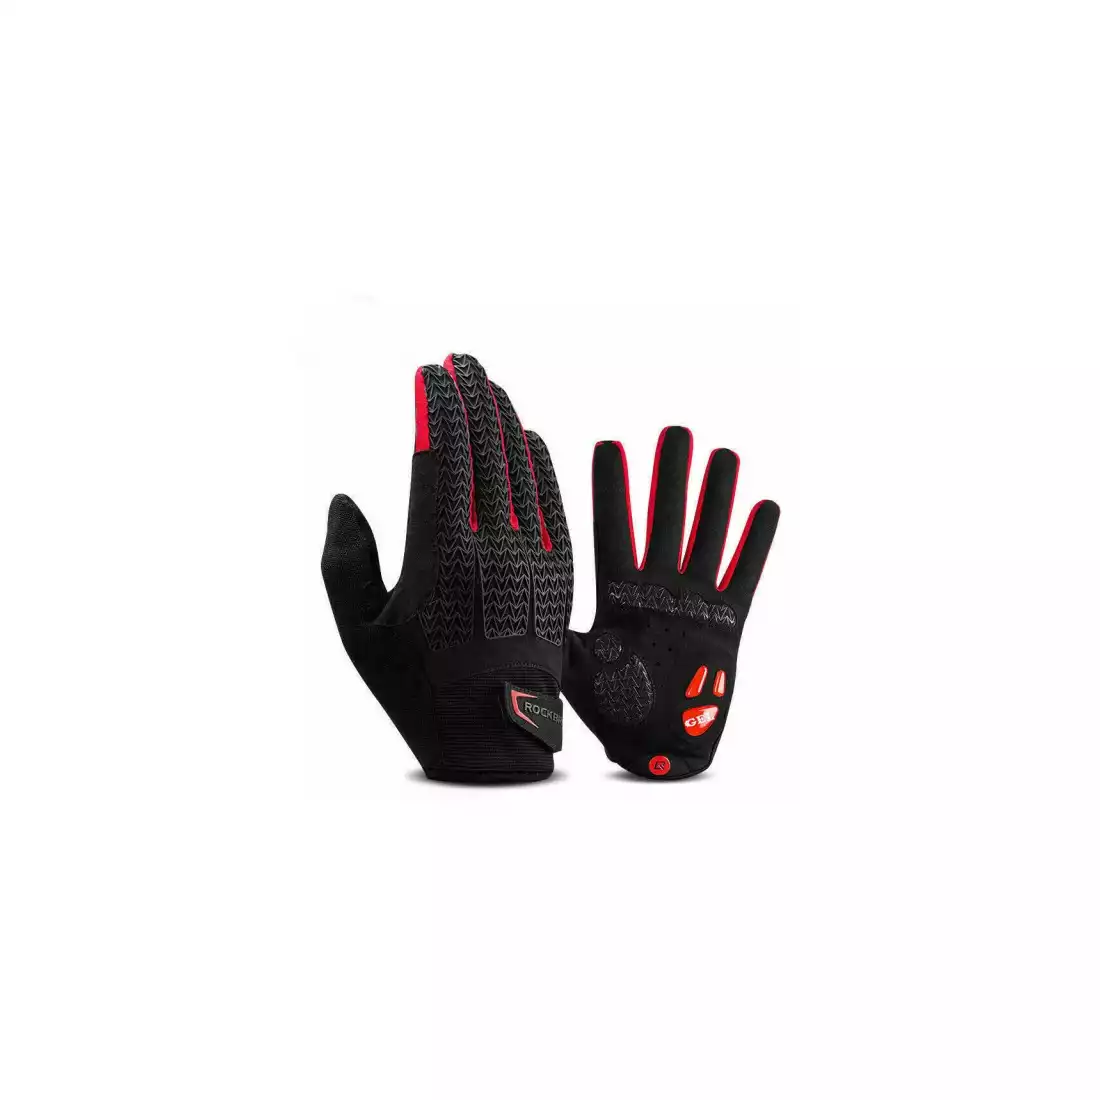 Rockbros rękawiczki rowerowe, żel, czarny-czerwony S169-1BR